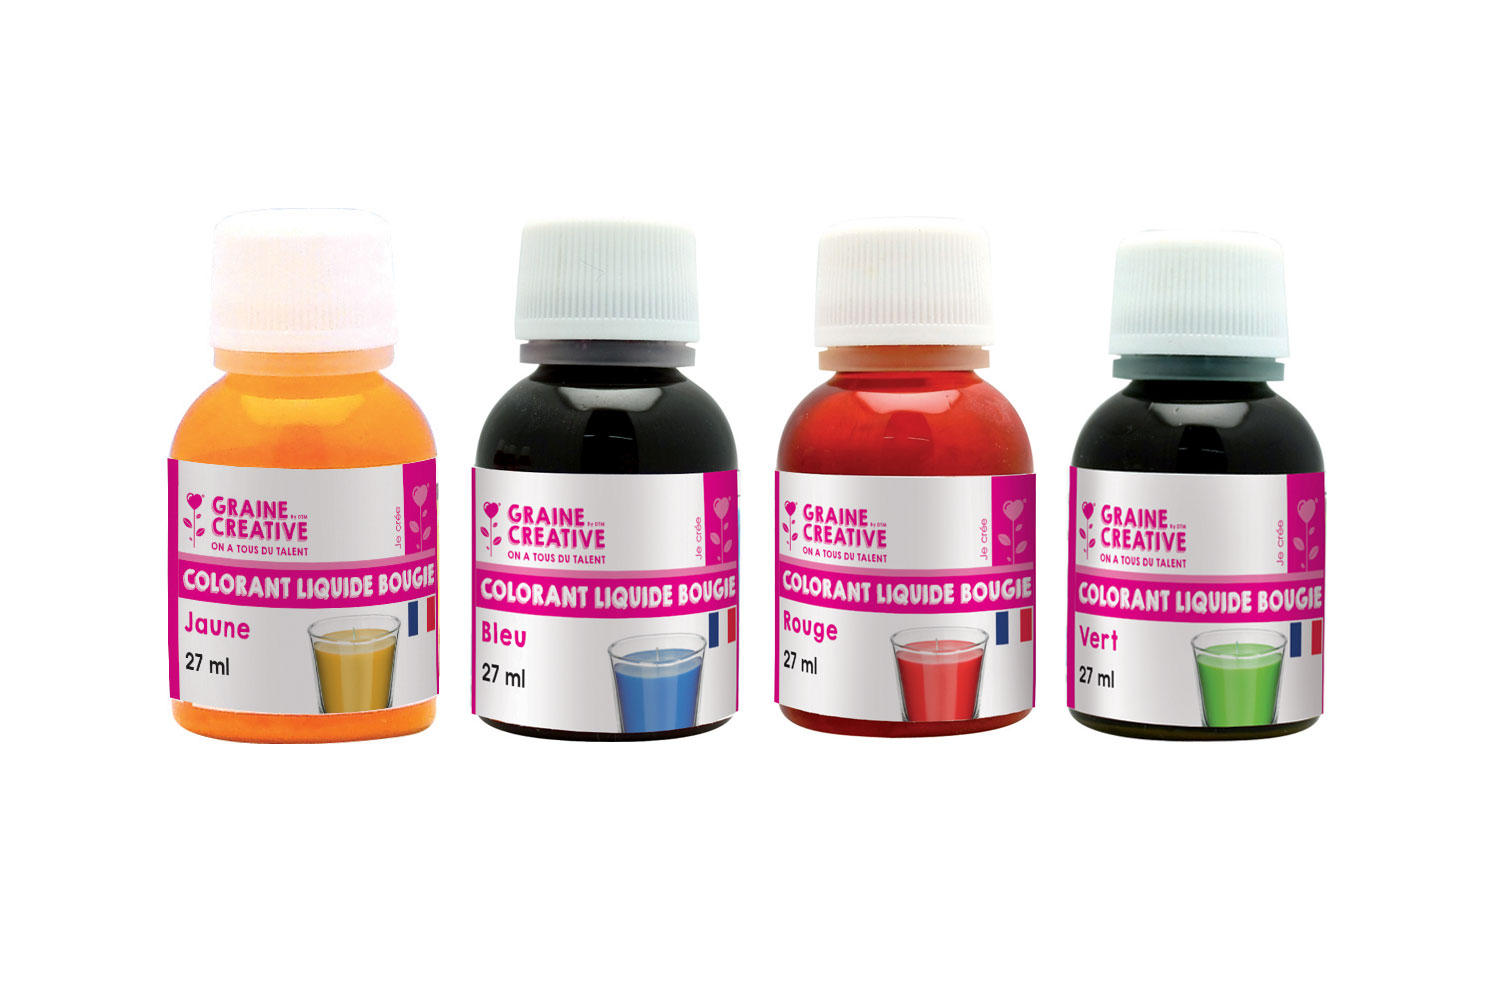 Colorant liquide pour bougie 5 flacons 27 ml - Graine créative ref 150300